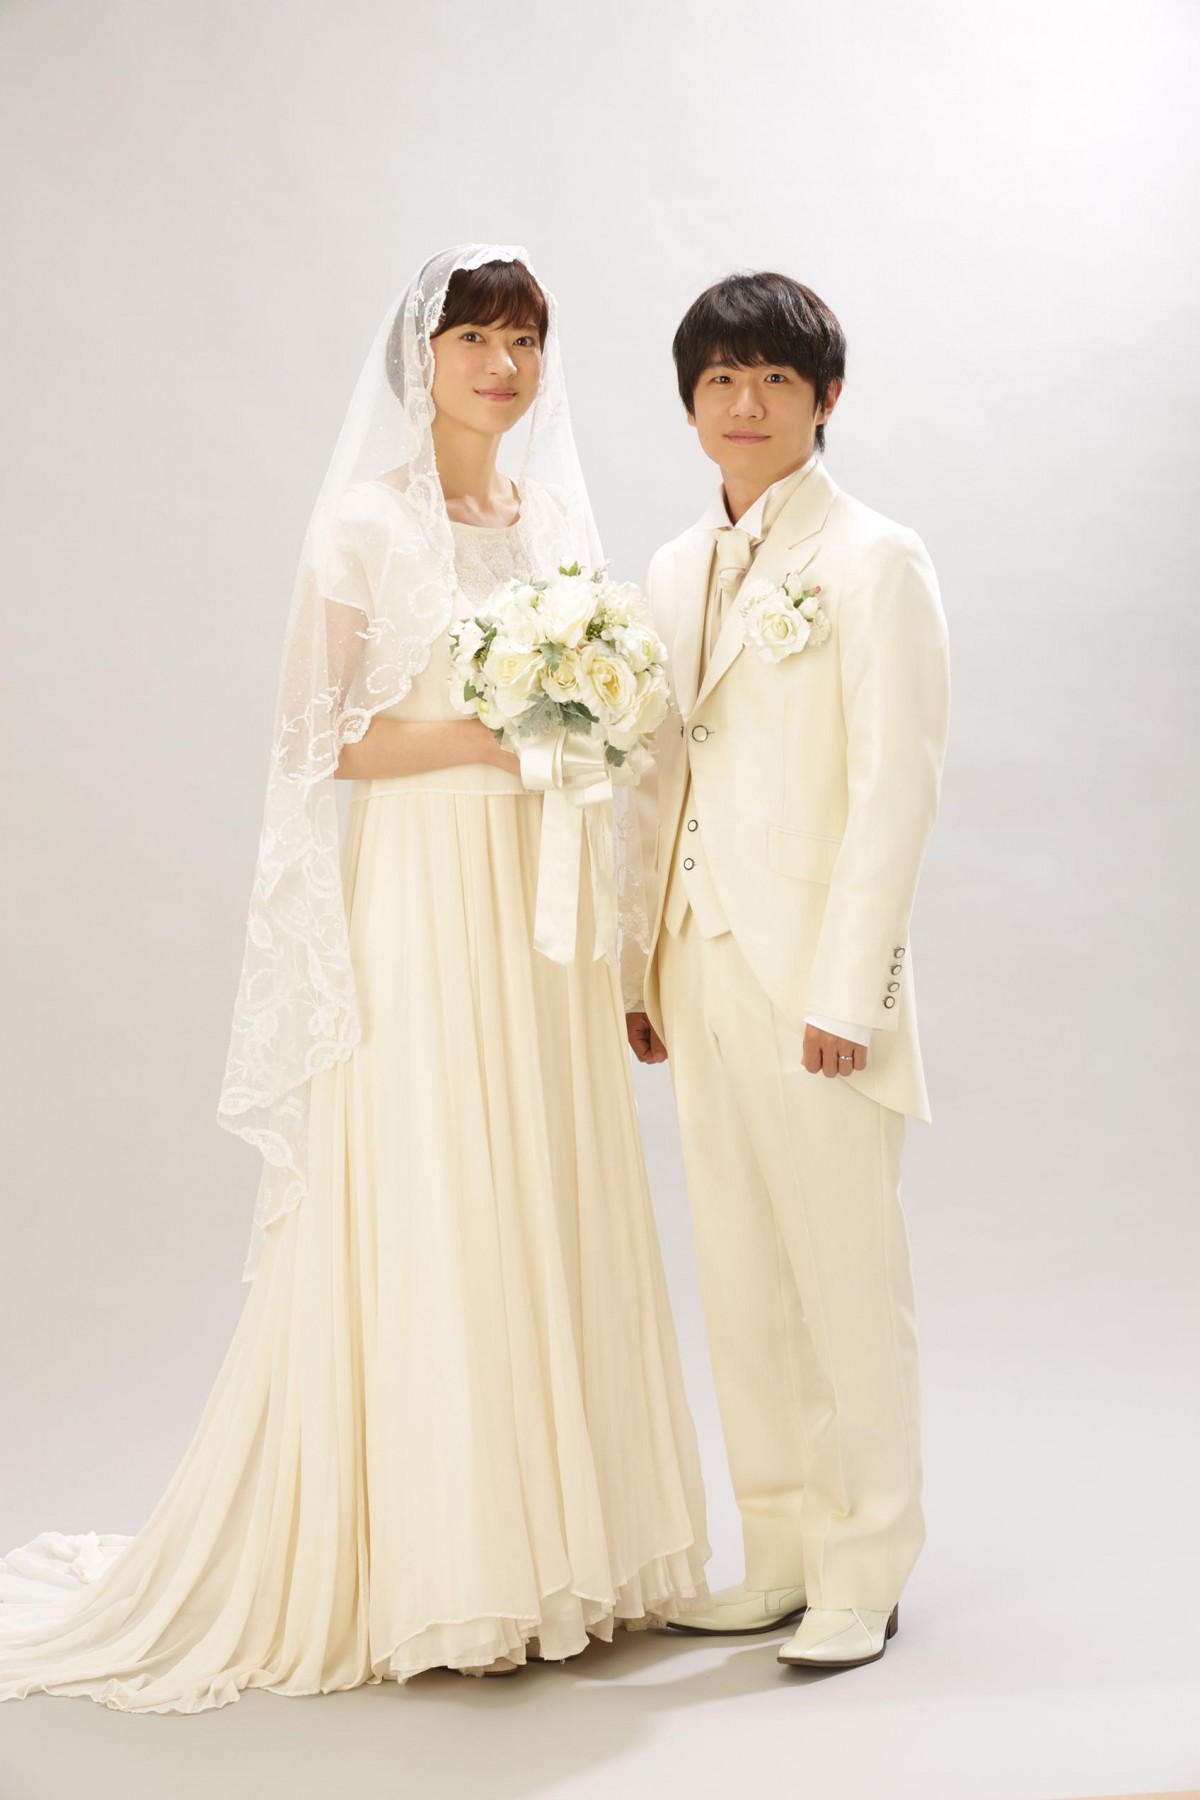 上野樹里の美しいウェディングドレス姿披露 『監察医 朝顔』結婚写真を公開